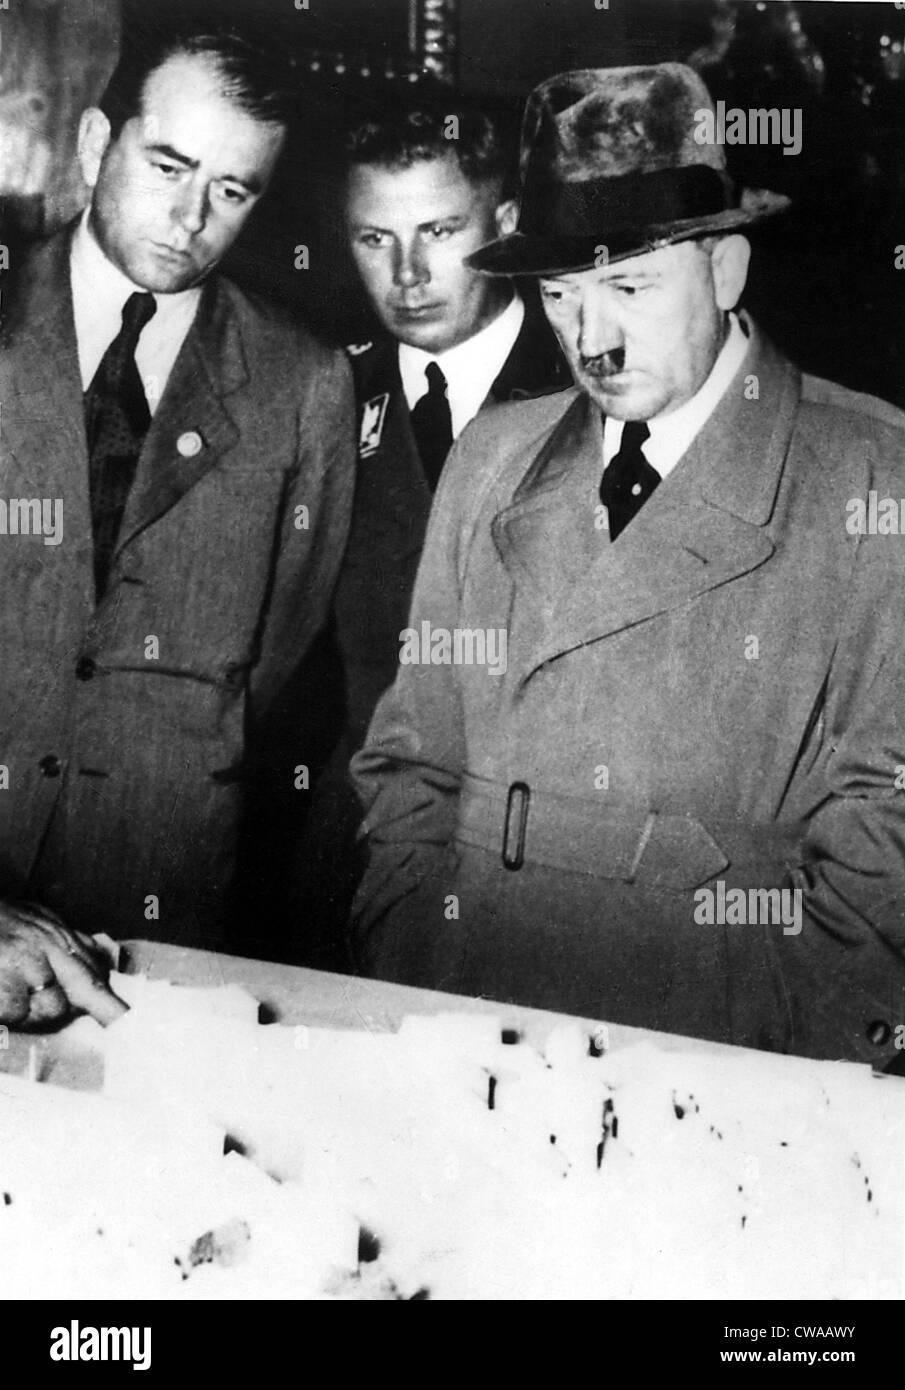 Adolf Hitler (R) und ALBERT SPEER (L), untersuchen ein Architekturmodell, während des zweiten Weltkriegs, der 1940er Jahre. Everett/CSU Archive. Stockfoto